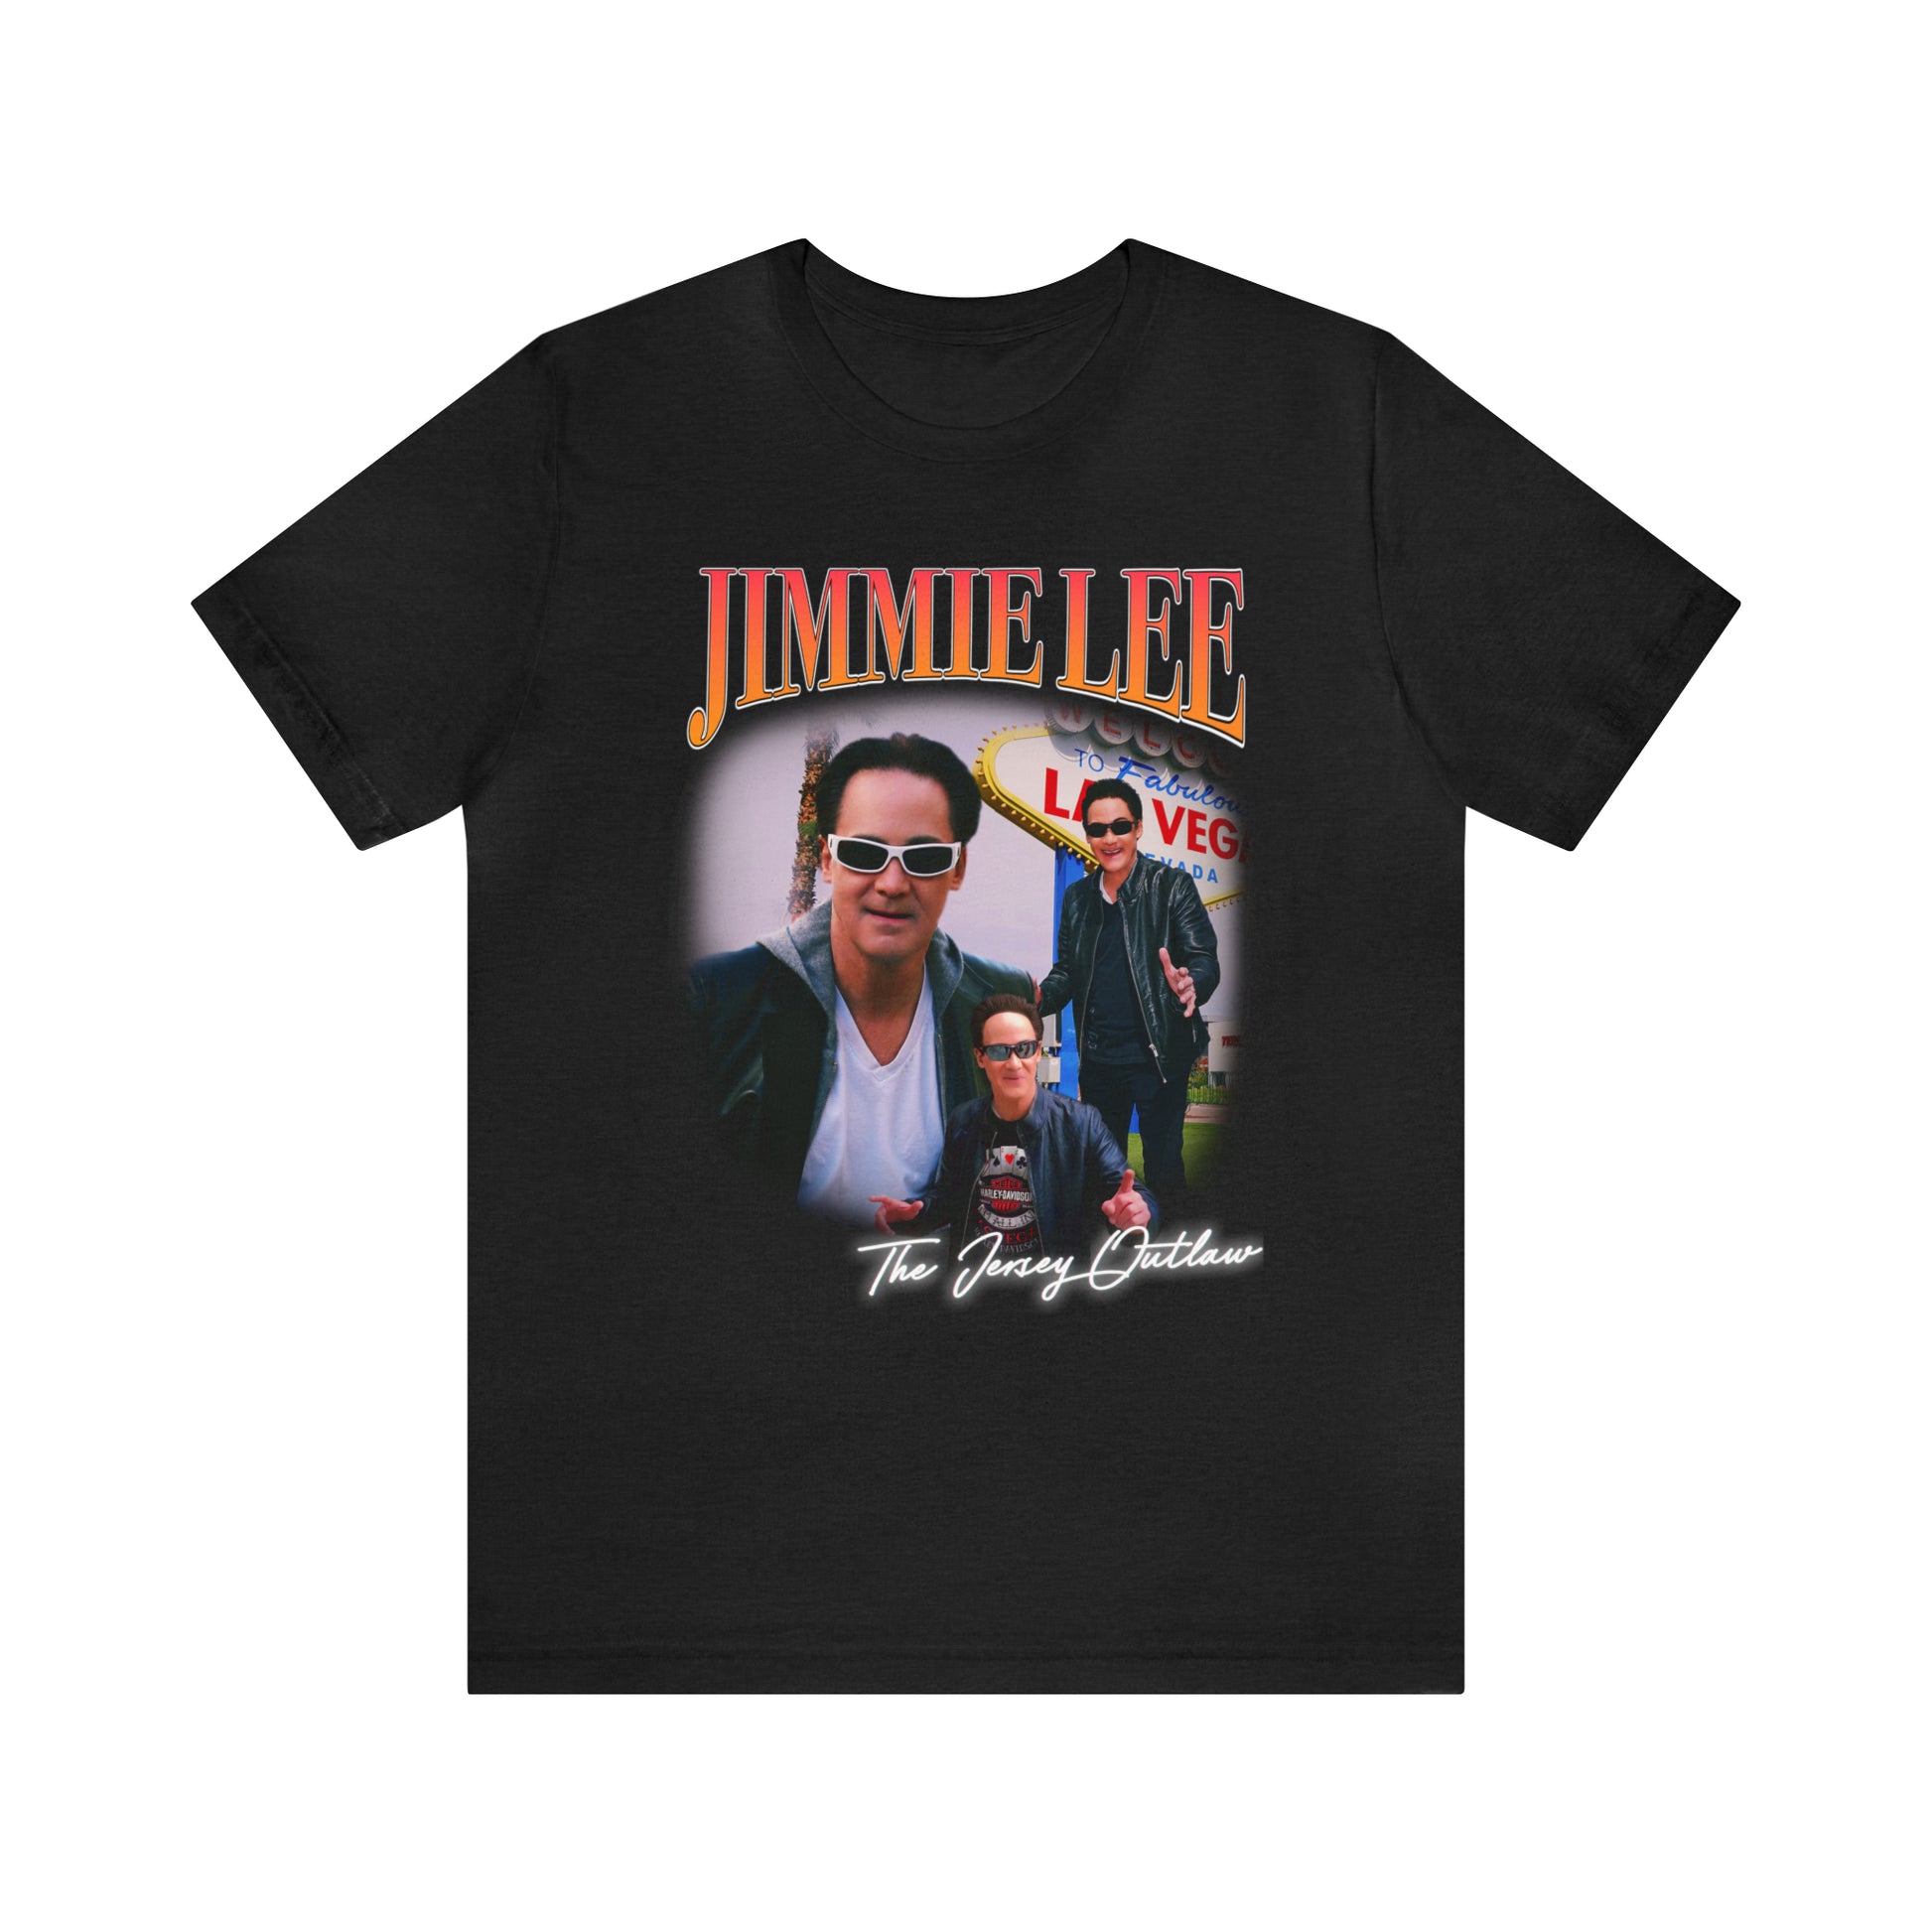 Jimmie Lee The Jersey Outlaw Fan JIMMIEWEAR Shirt –